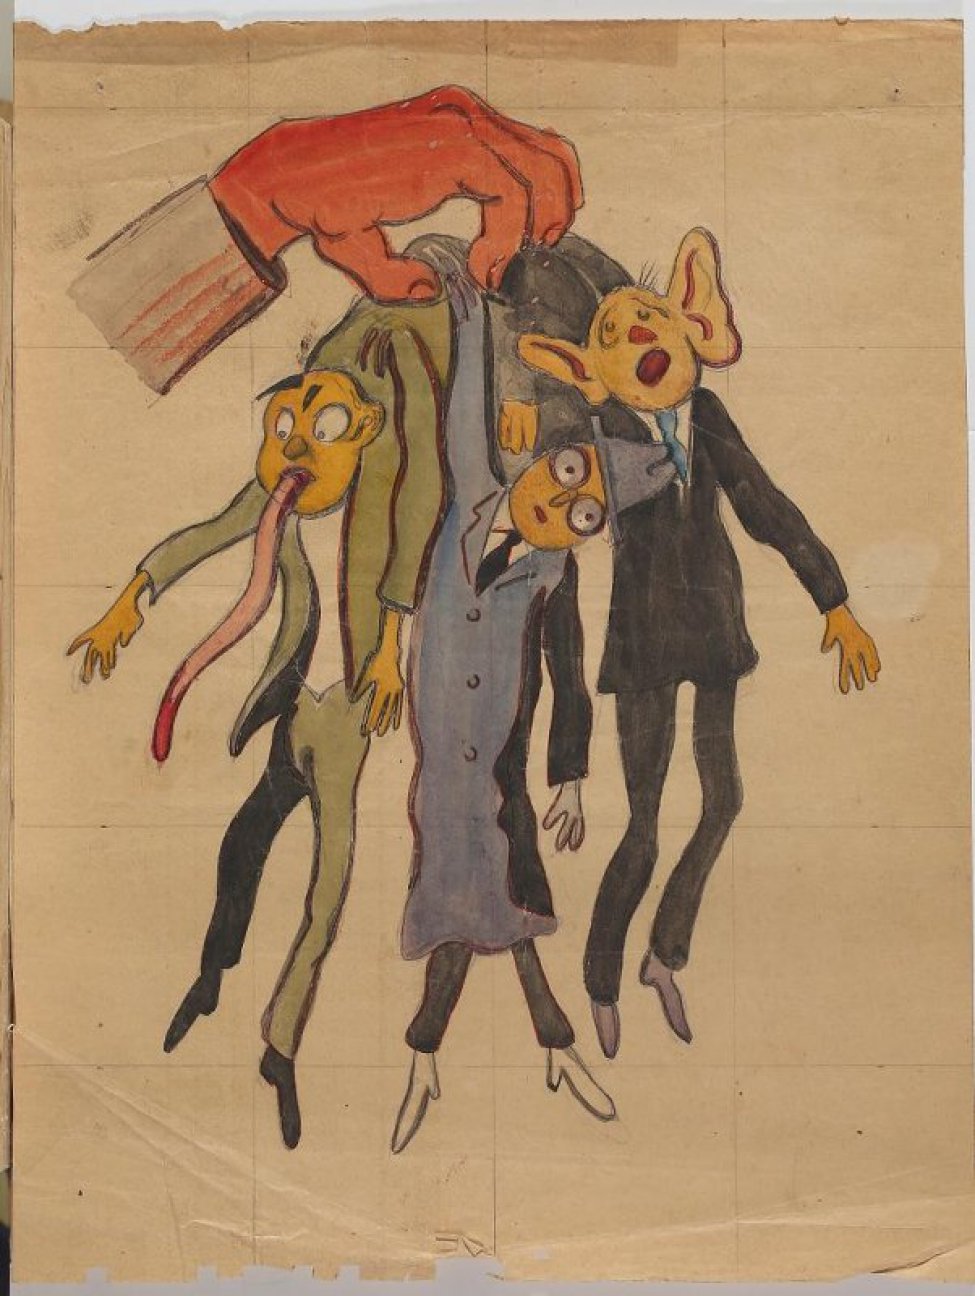 Слева вверху изображена красная рука держащая за шиворот трех мужчин с длинным языком, в розовых очках, с большими ушами.